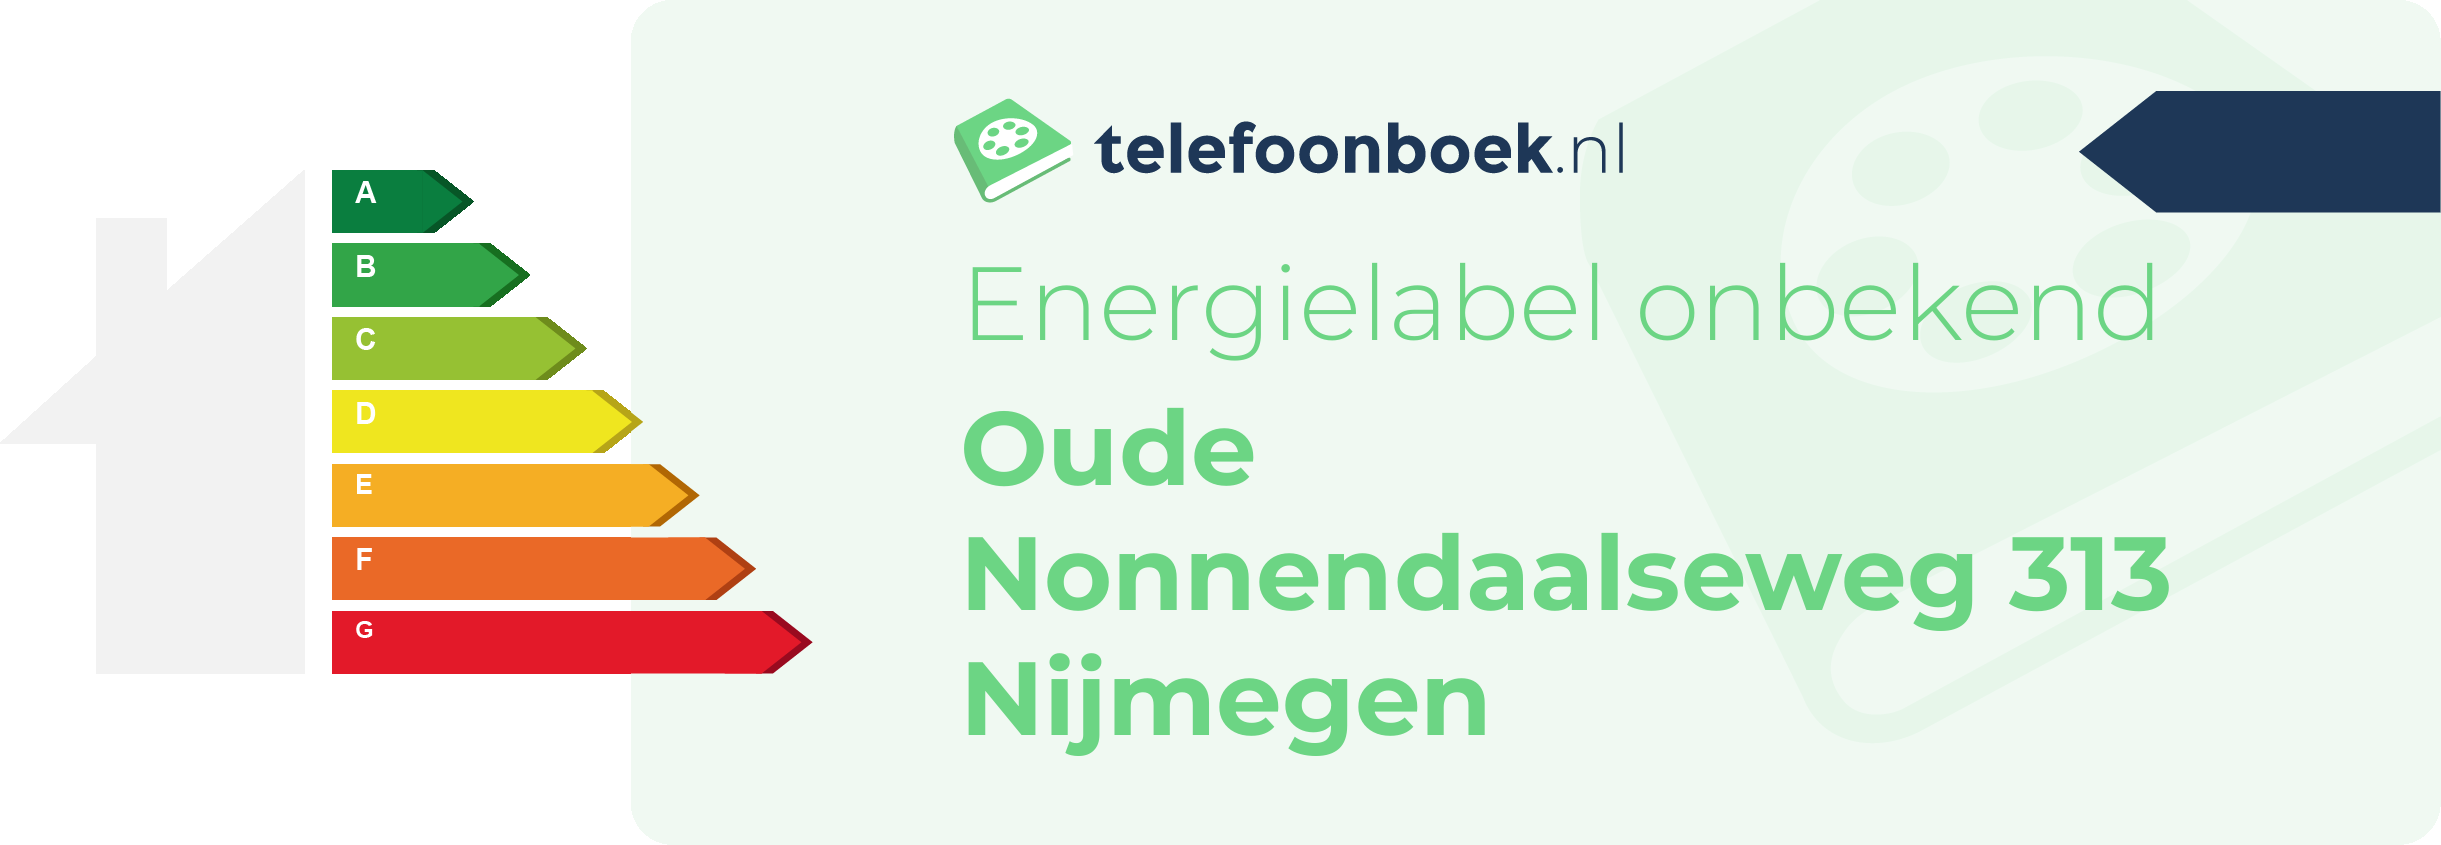 Energielabel Oude Nonnendaalseweg 313 Nijmegen